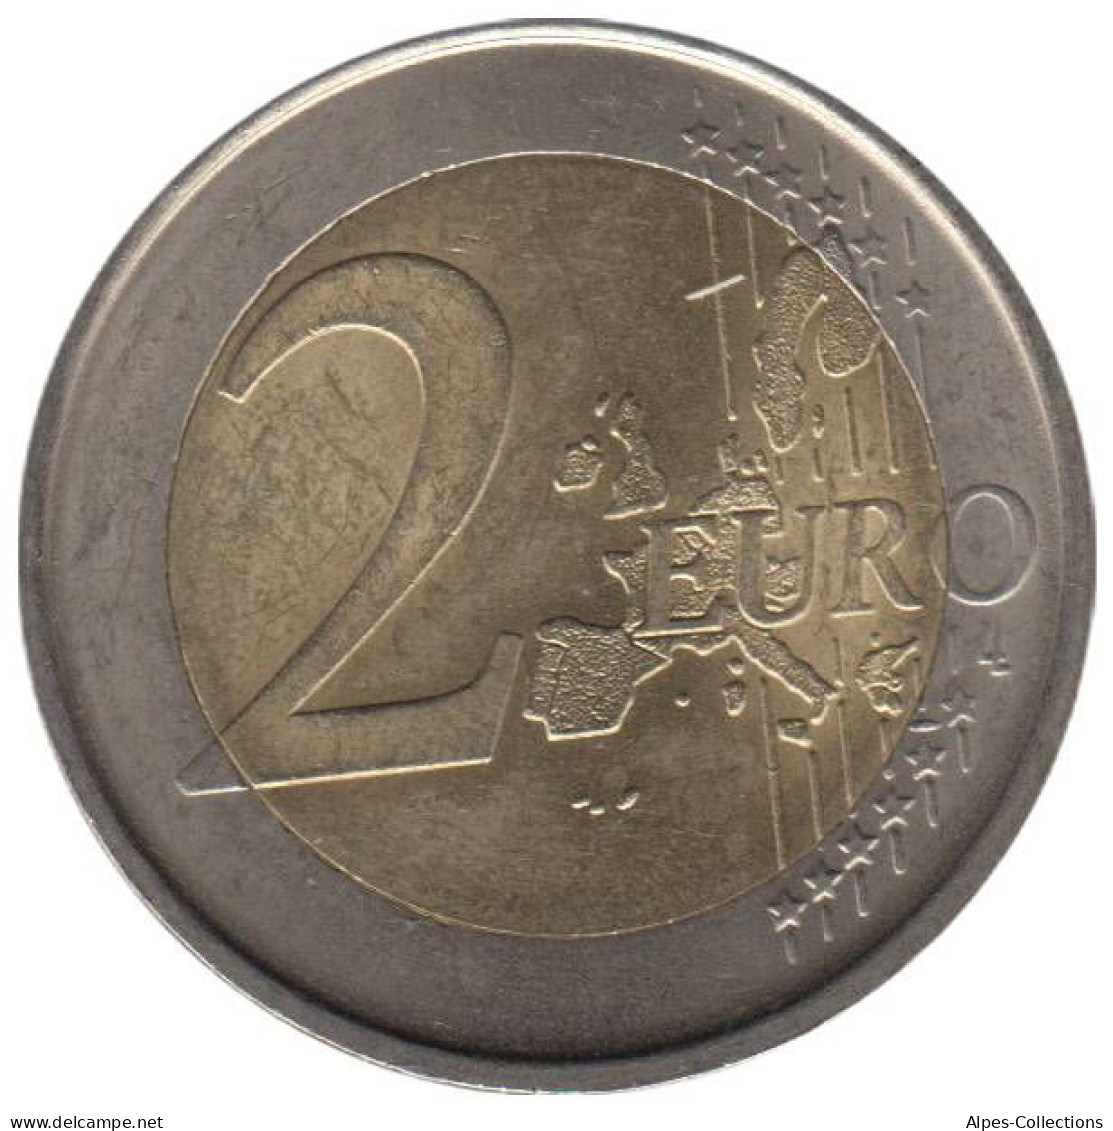 ES20006.1 - ESPAGNE - 2 Euros - 2006 - Espagne